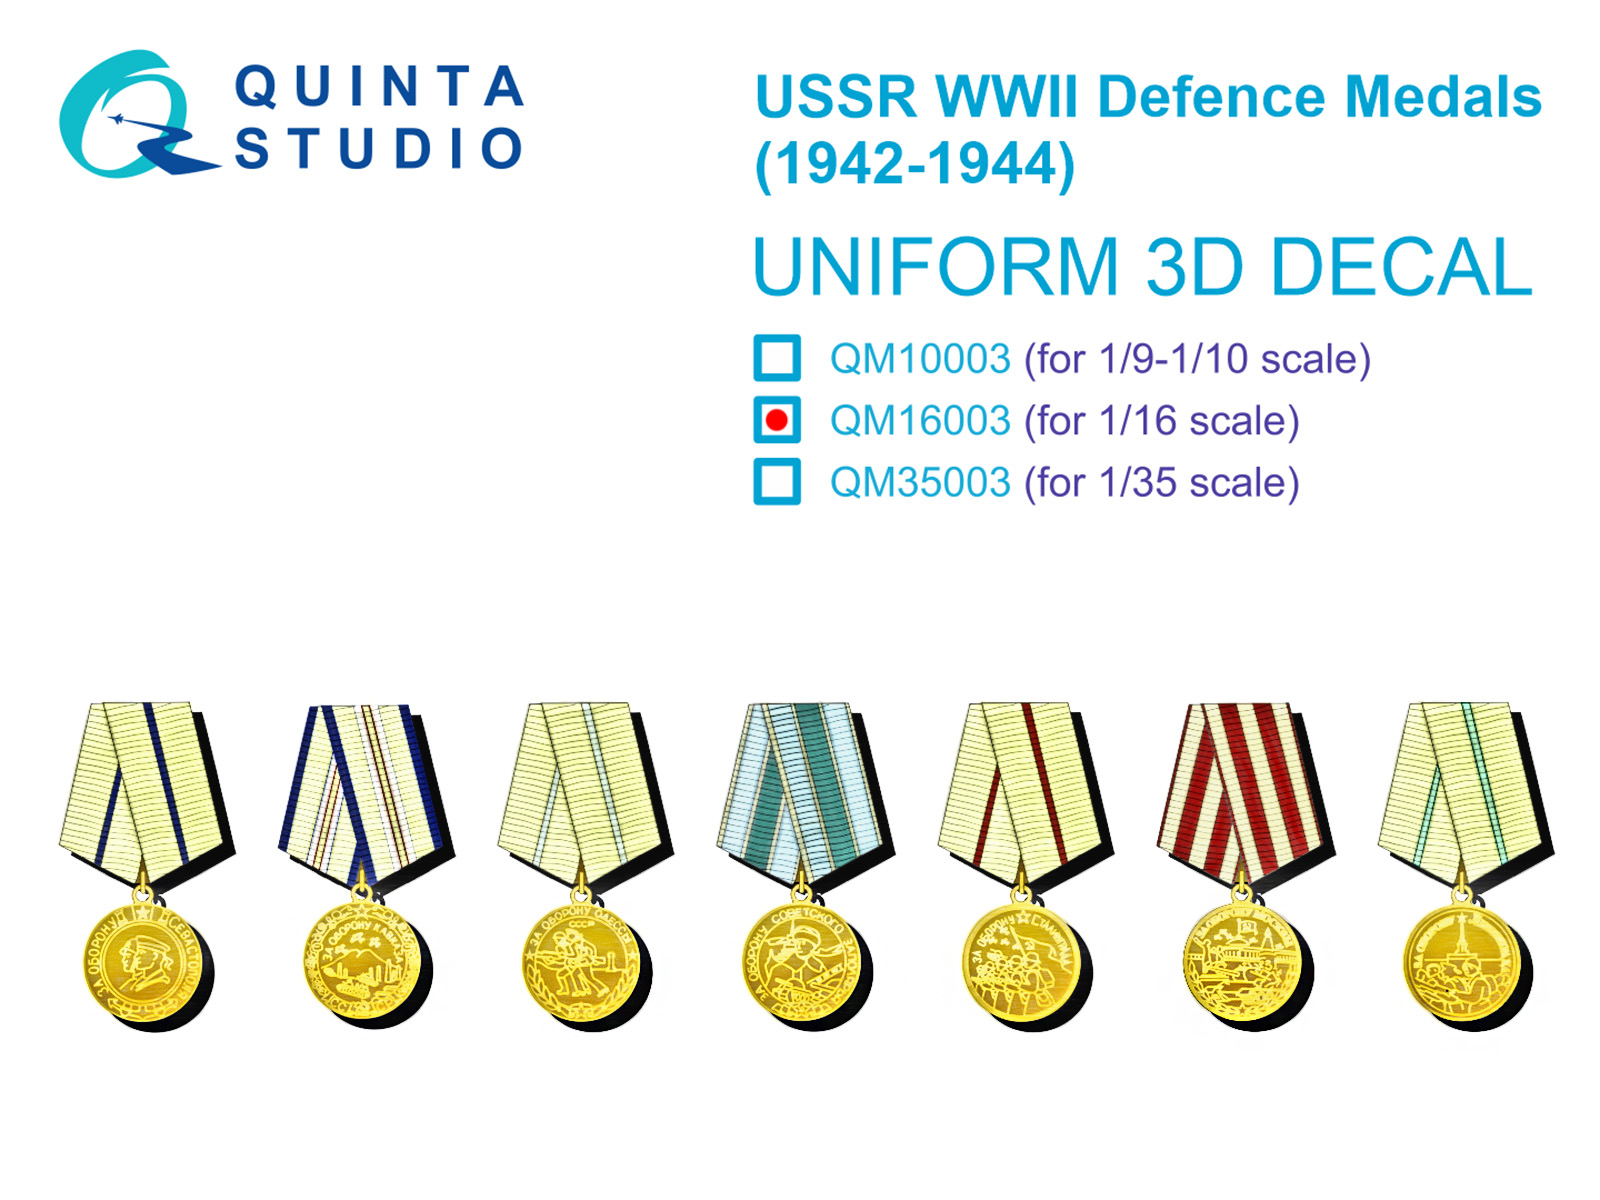 QM16003  декали  Медали CCCР "За оборону" в Великой Отечественной войне (1942-до 1945 г.)  (1:16)